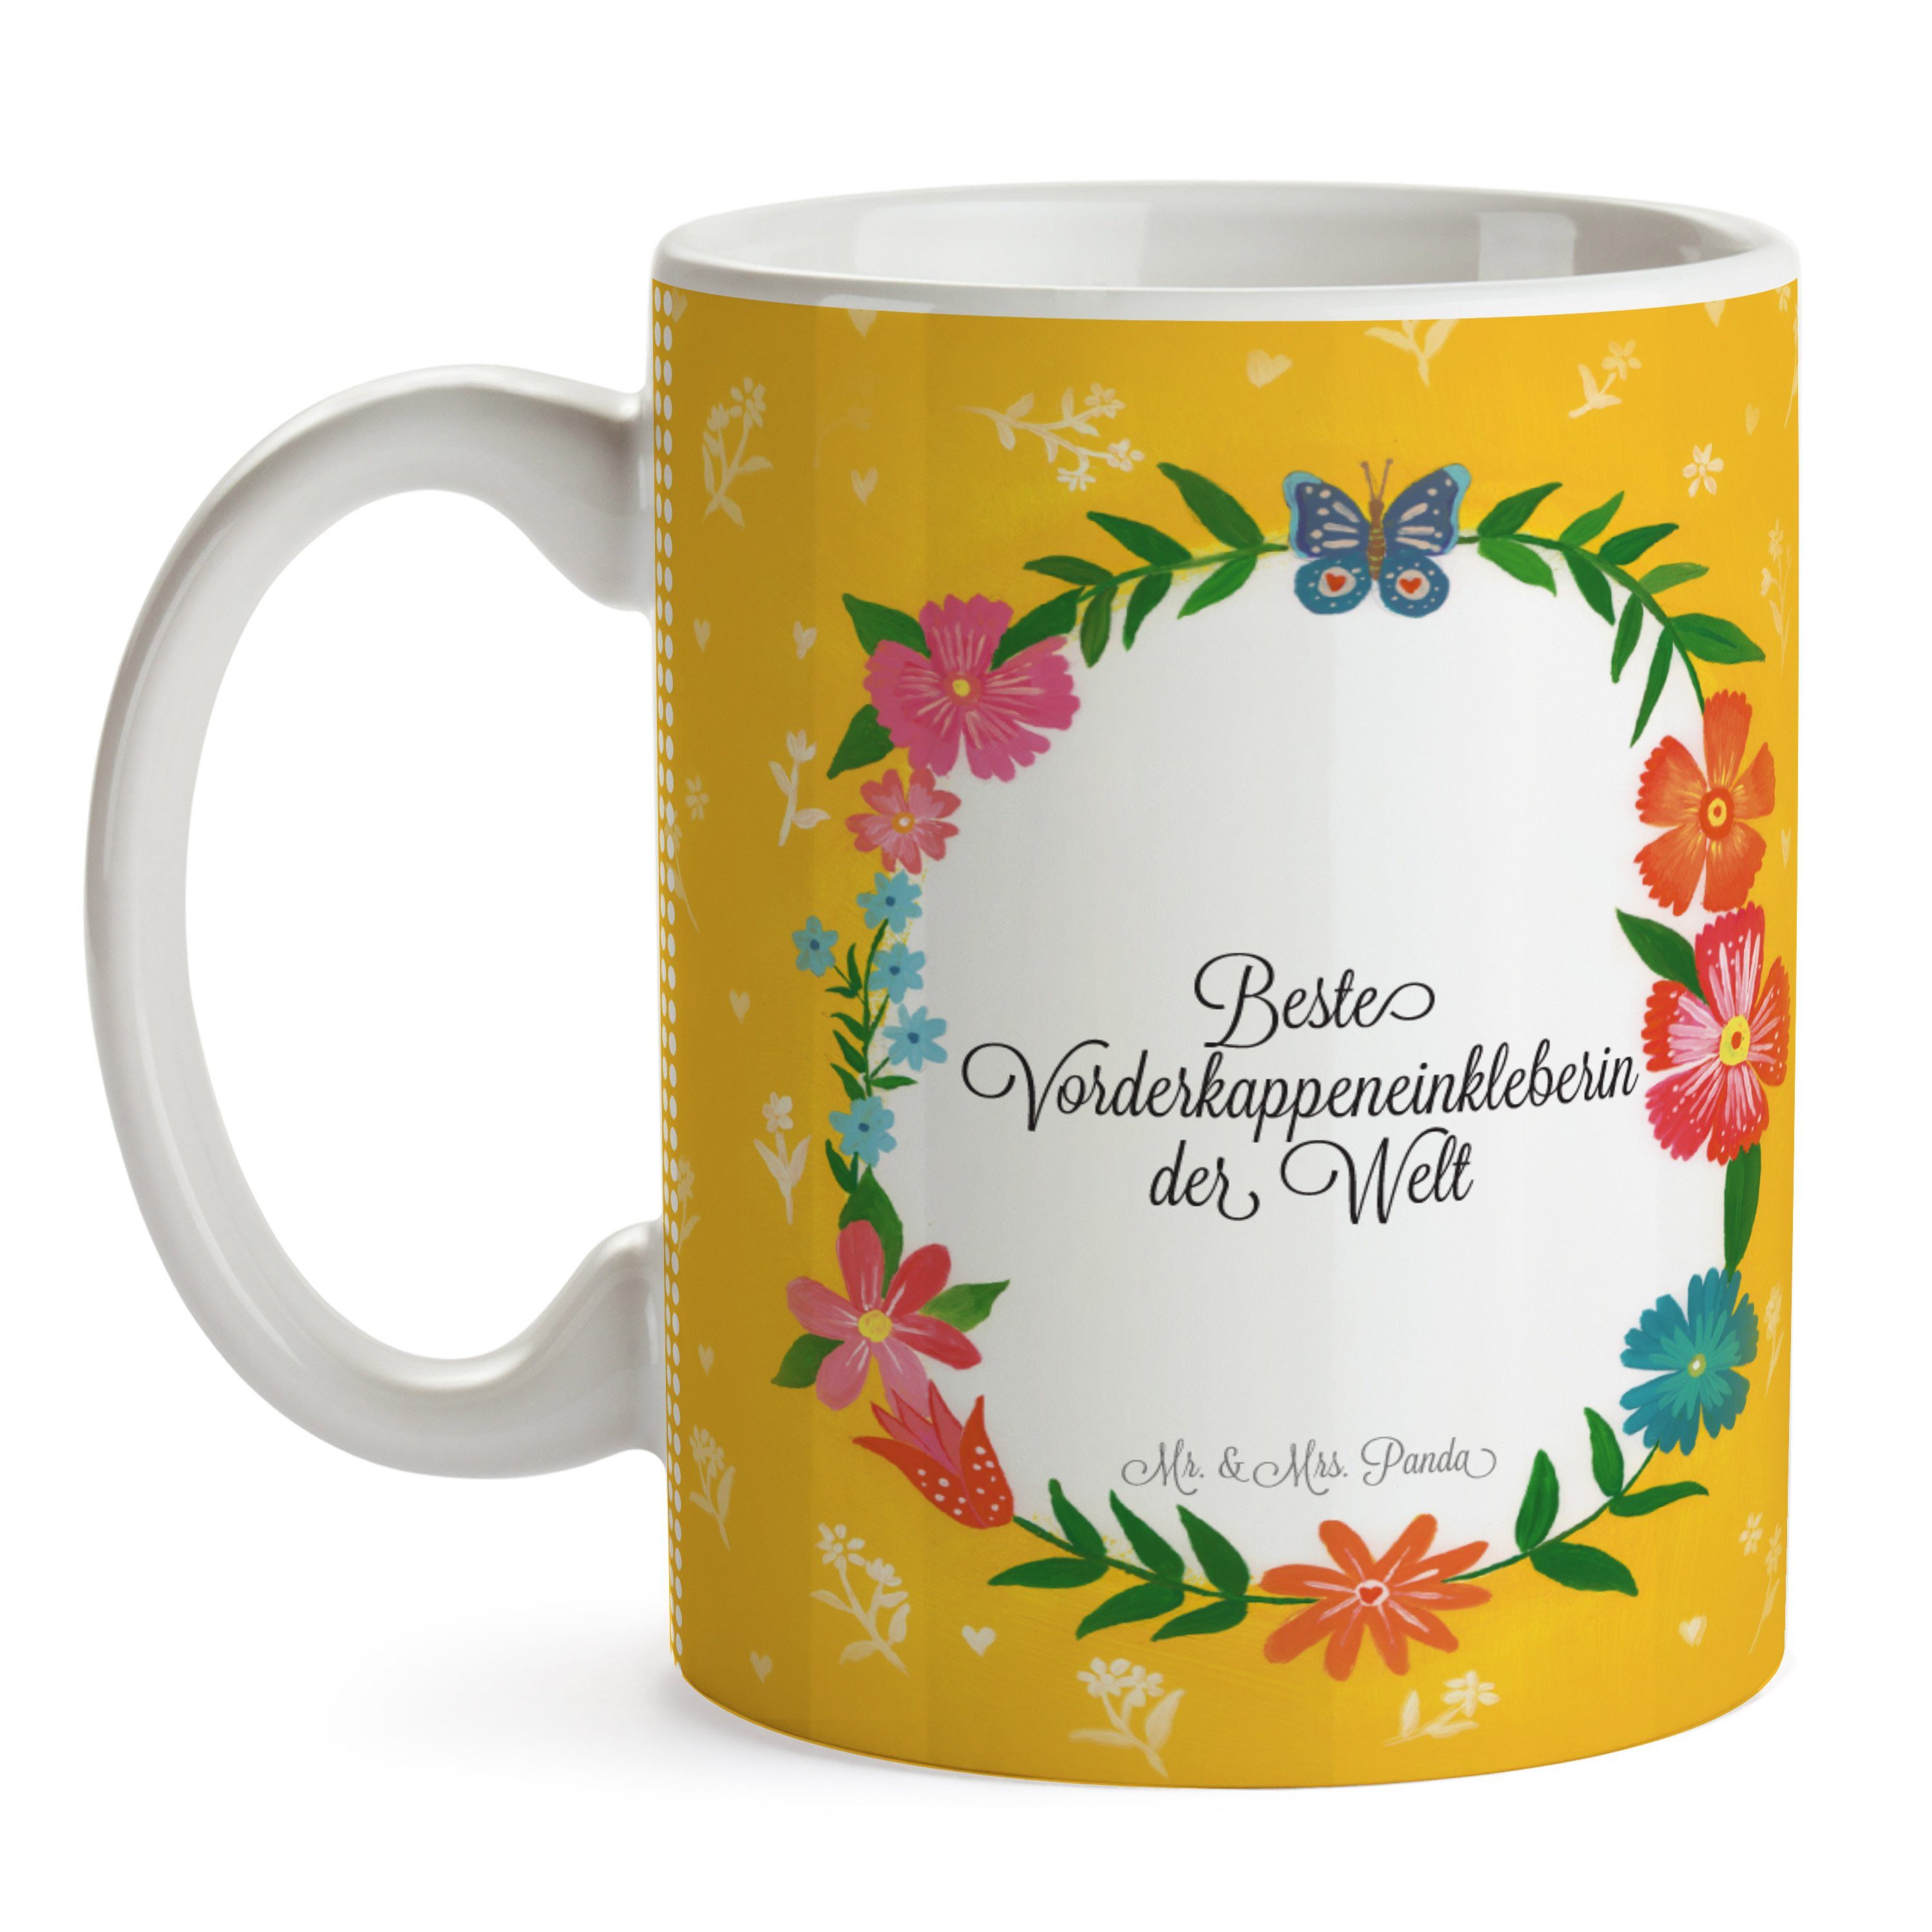 Kaffeebecher, Geschenk, R, Mrs. - Tasse, Vorderkappeneinkleberin Keramik Mr. & Tasse Panda Abschluss,